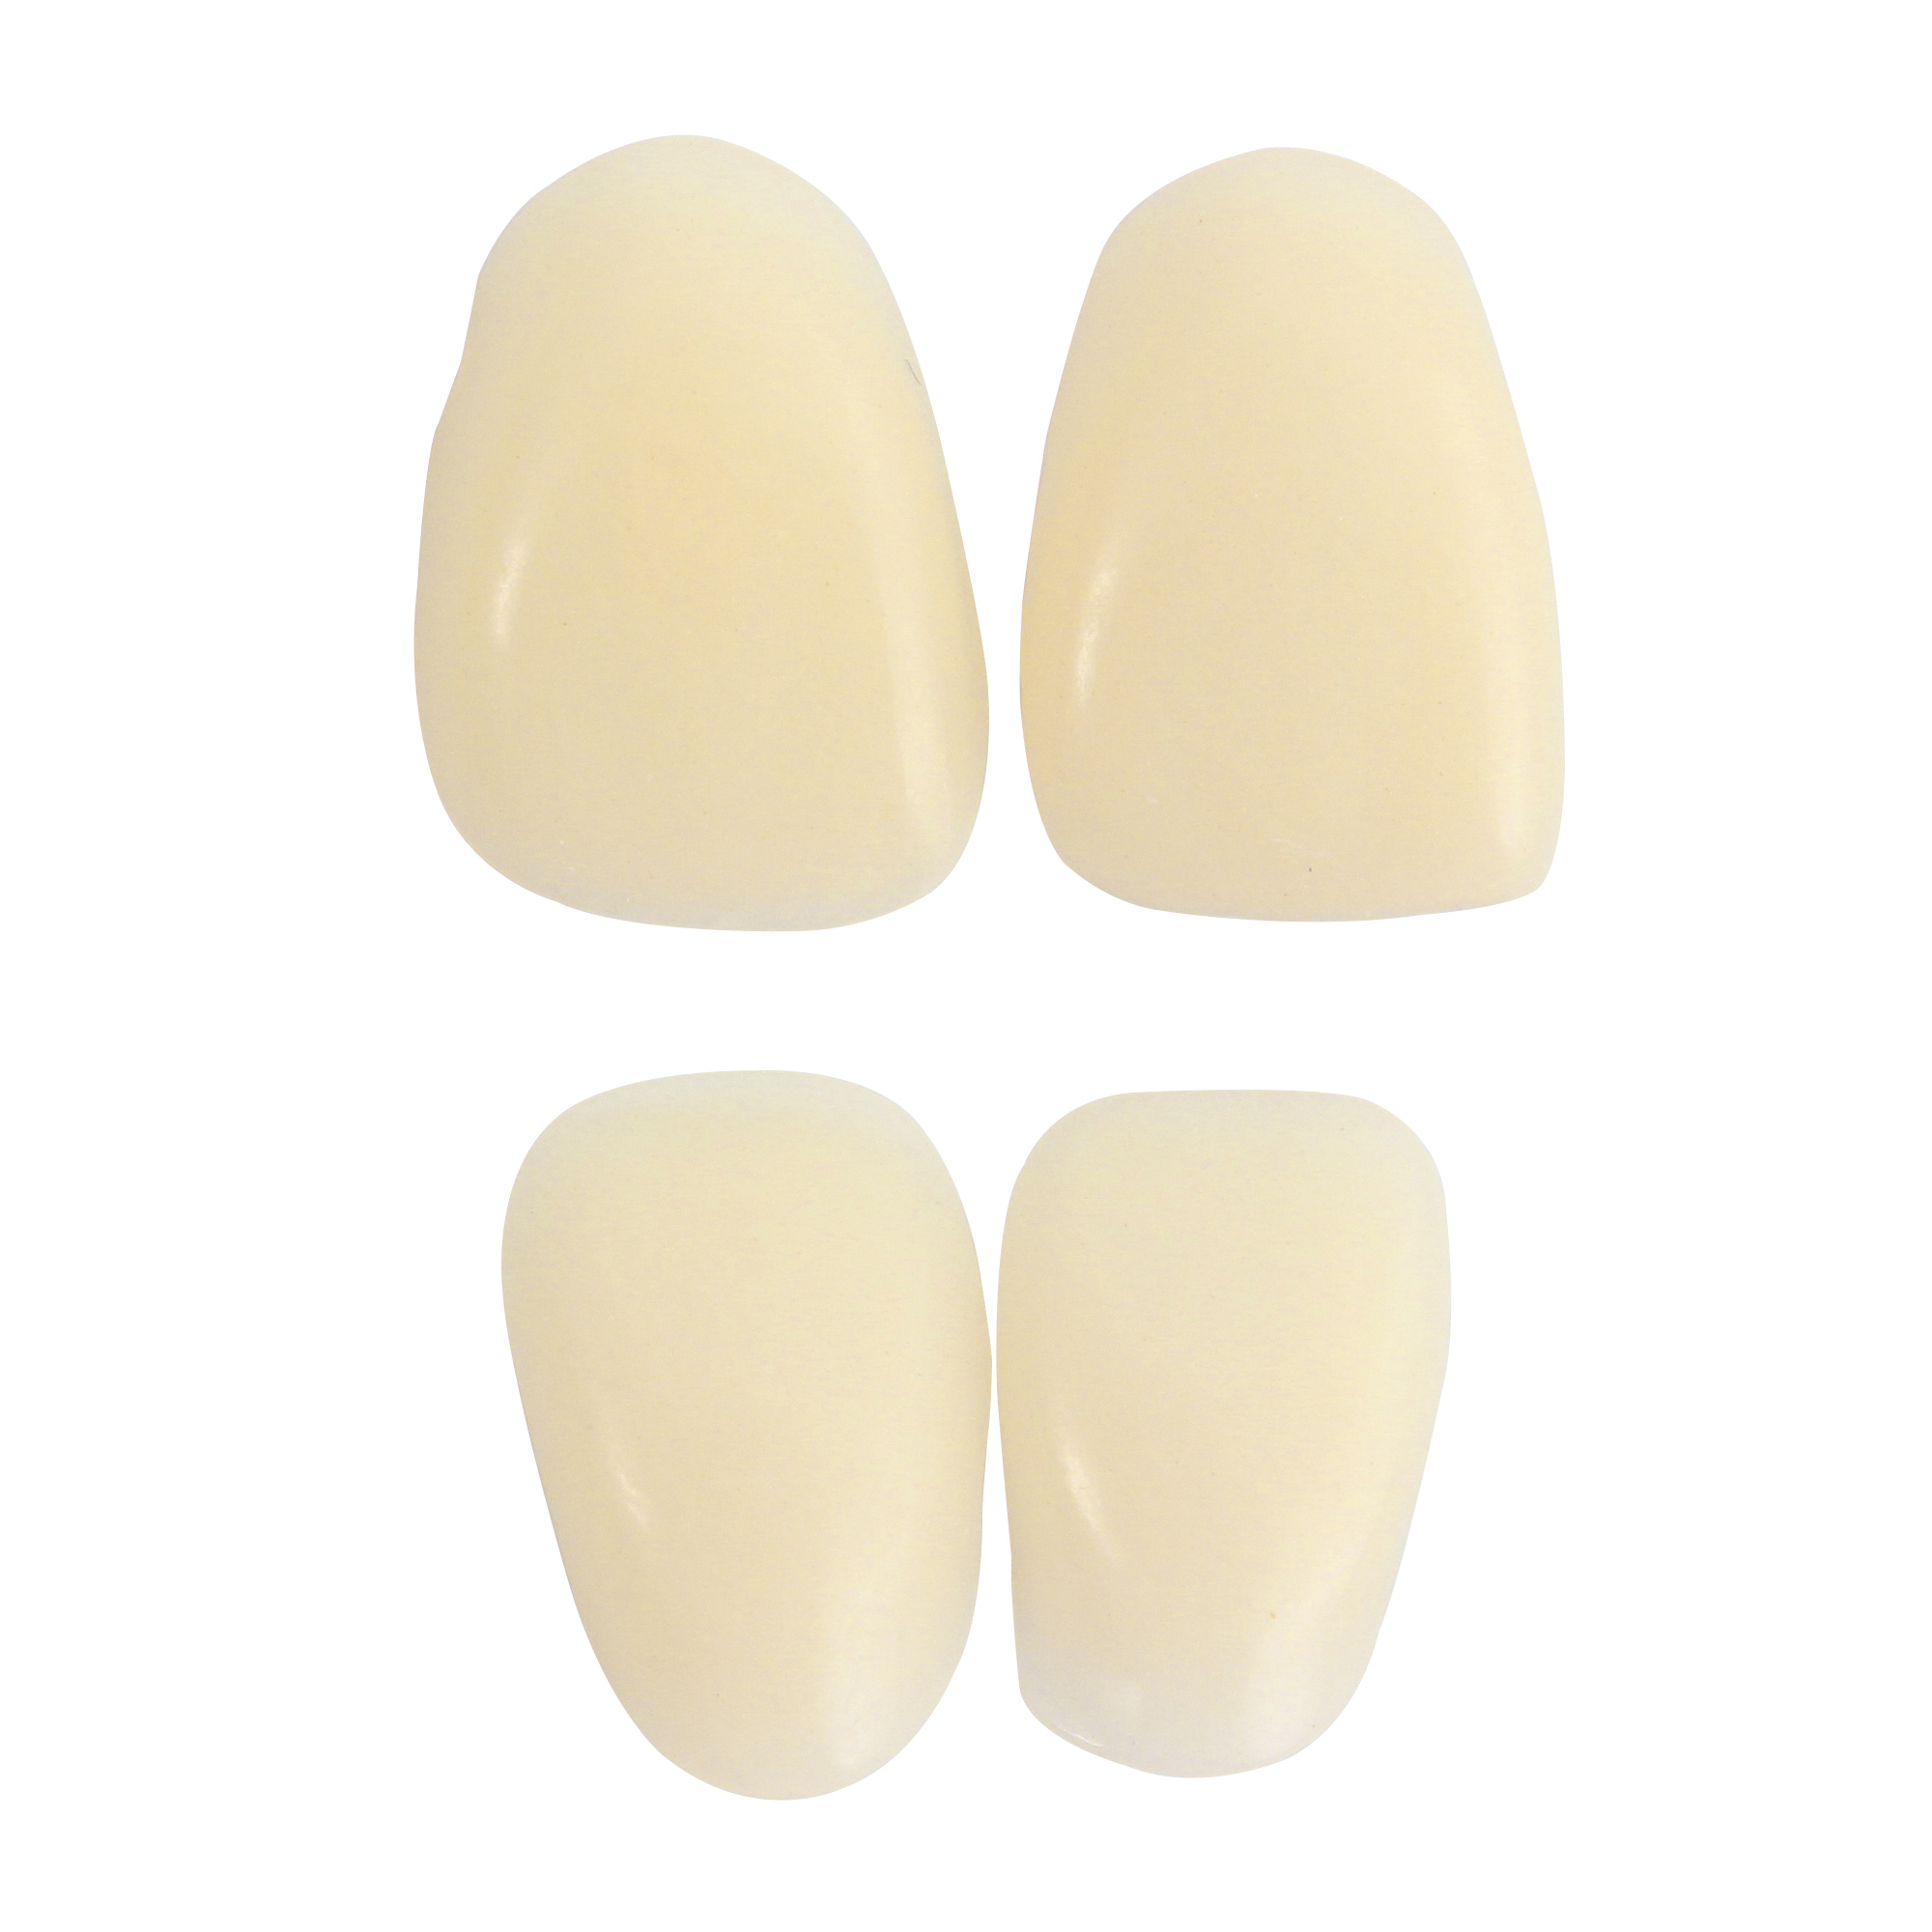 日进/NISSIN DURACROSS Physio 生理性硬质树脂牙 前牙 6*1 TS4 中号 A2 单板 塑钢牙